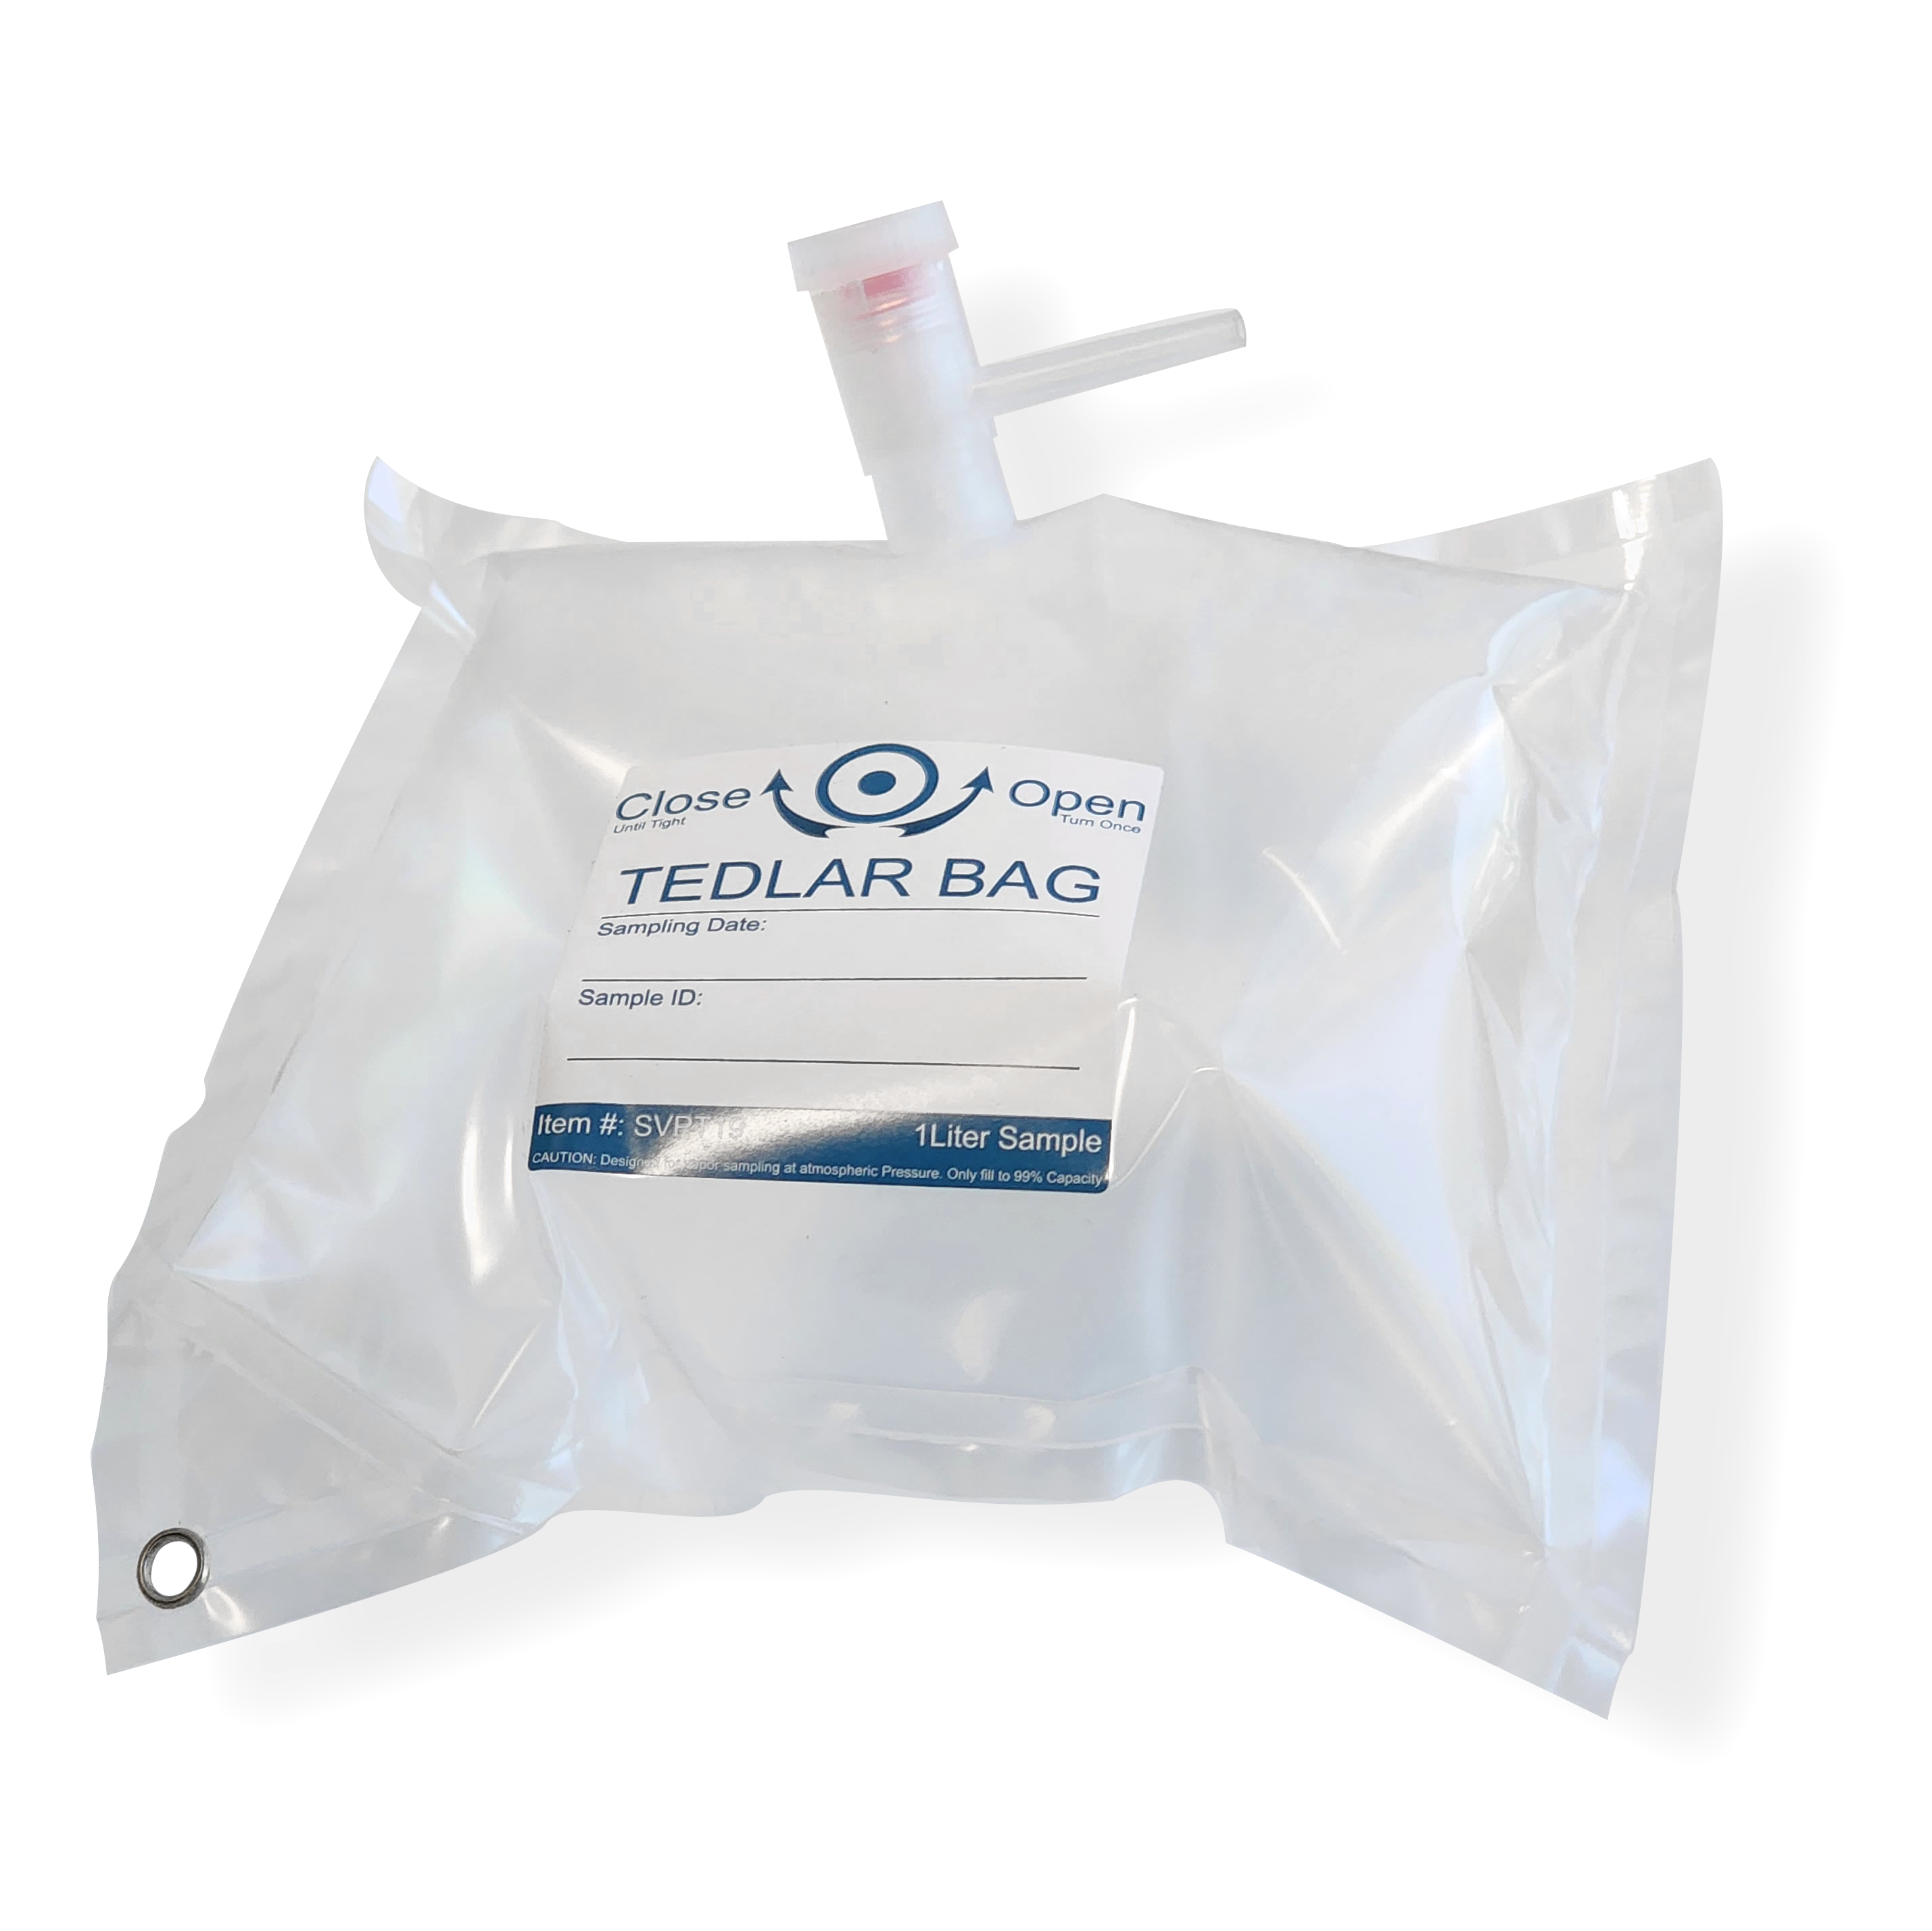 1 Liter Tedlar Bags